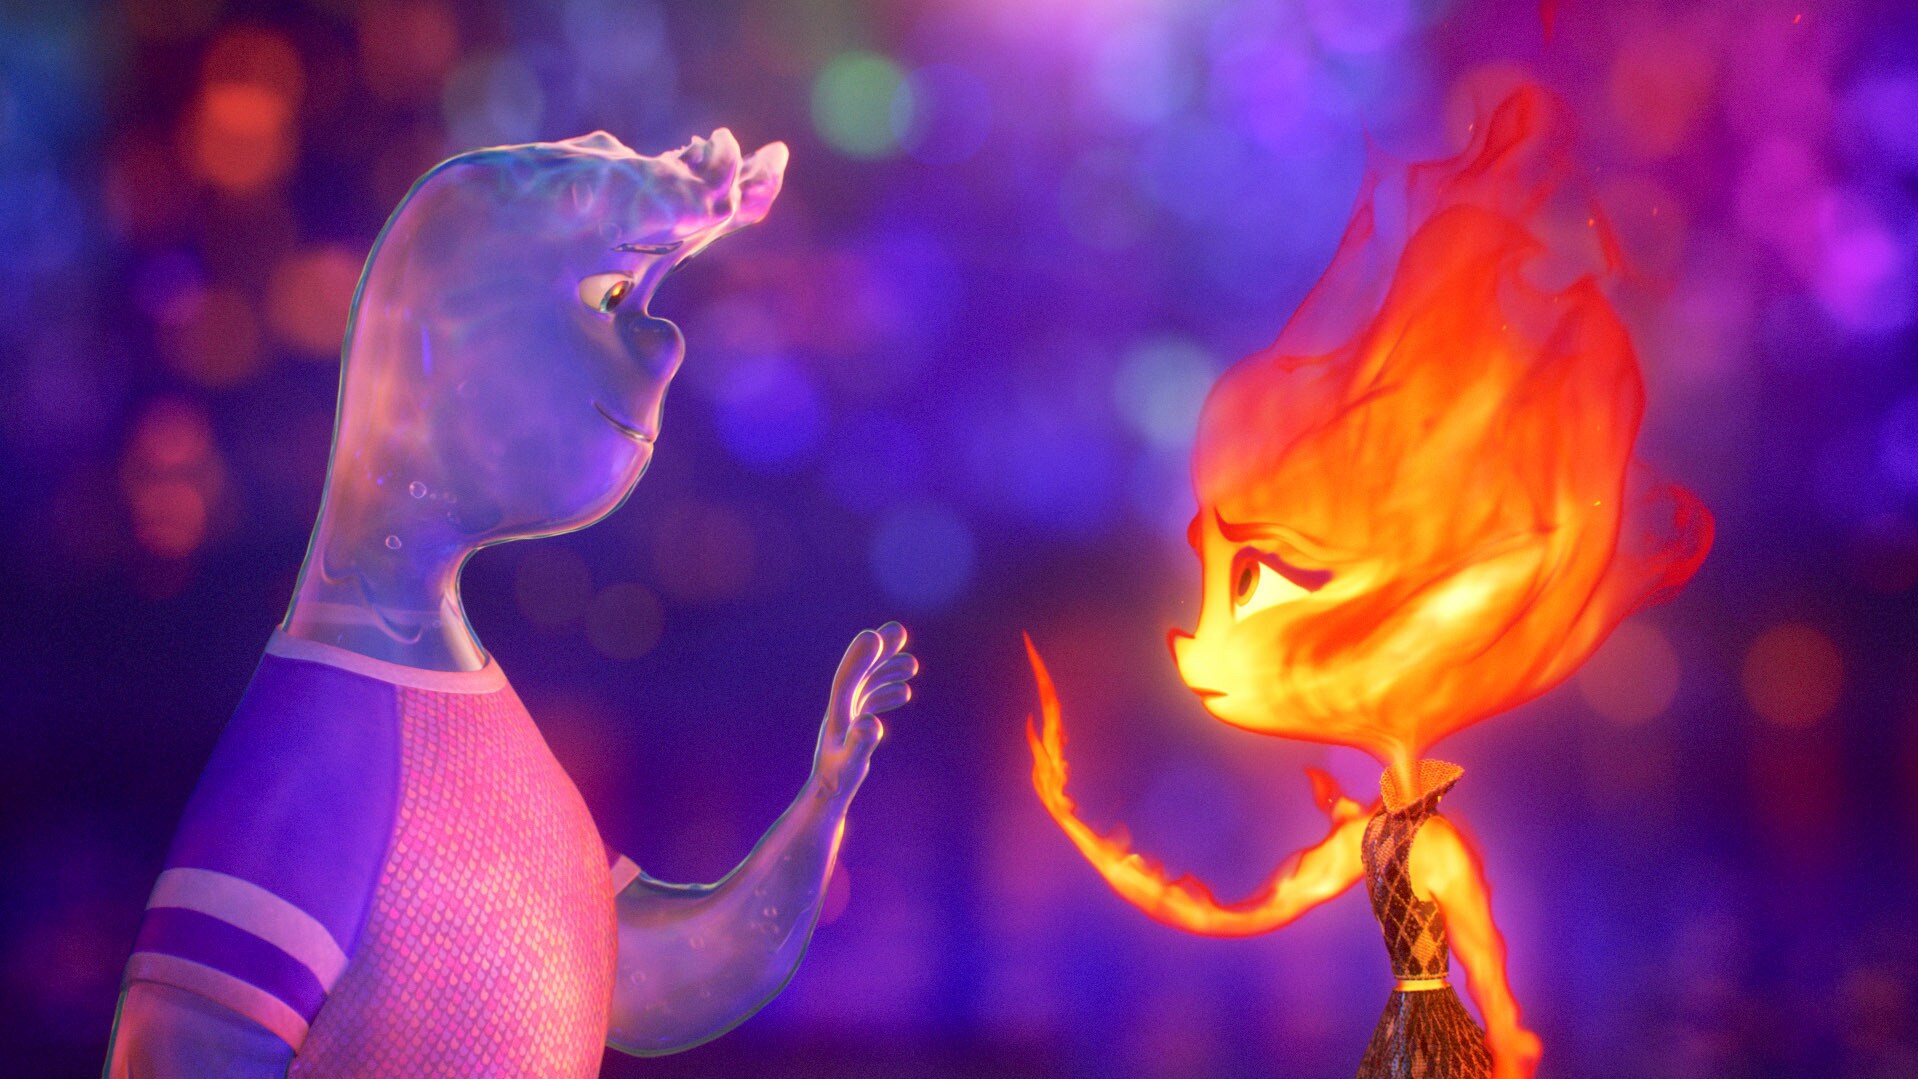 “Między nami żywiołami” – najnowsza produkcja Disneya i Pixara od 13 września w Disney+